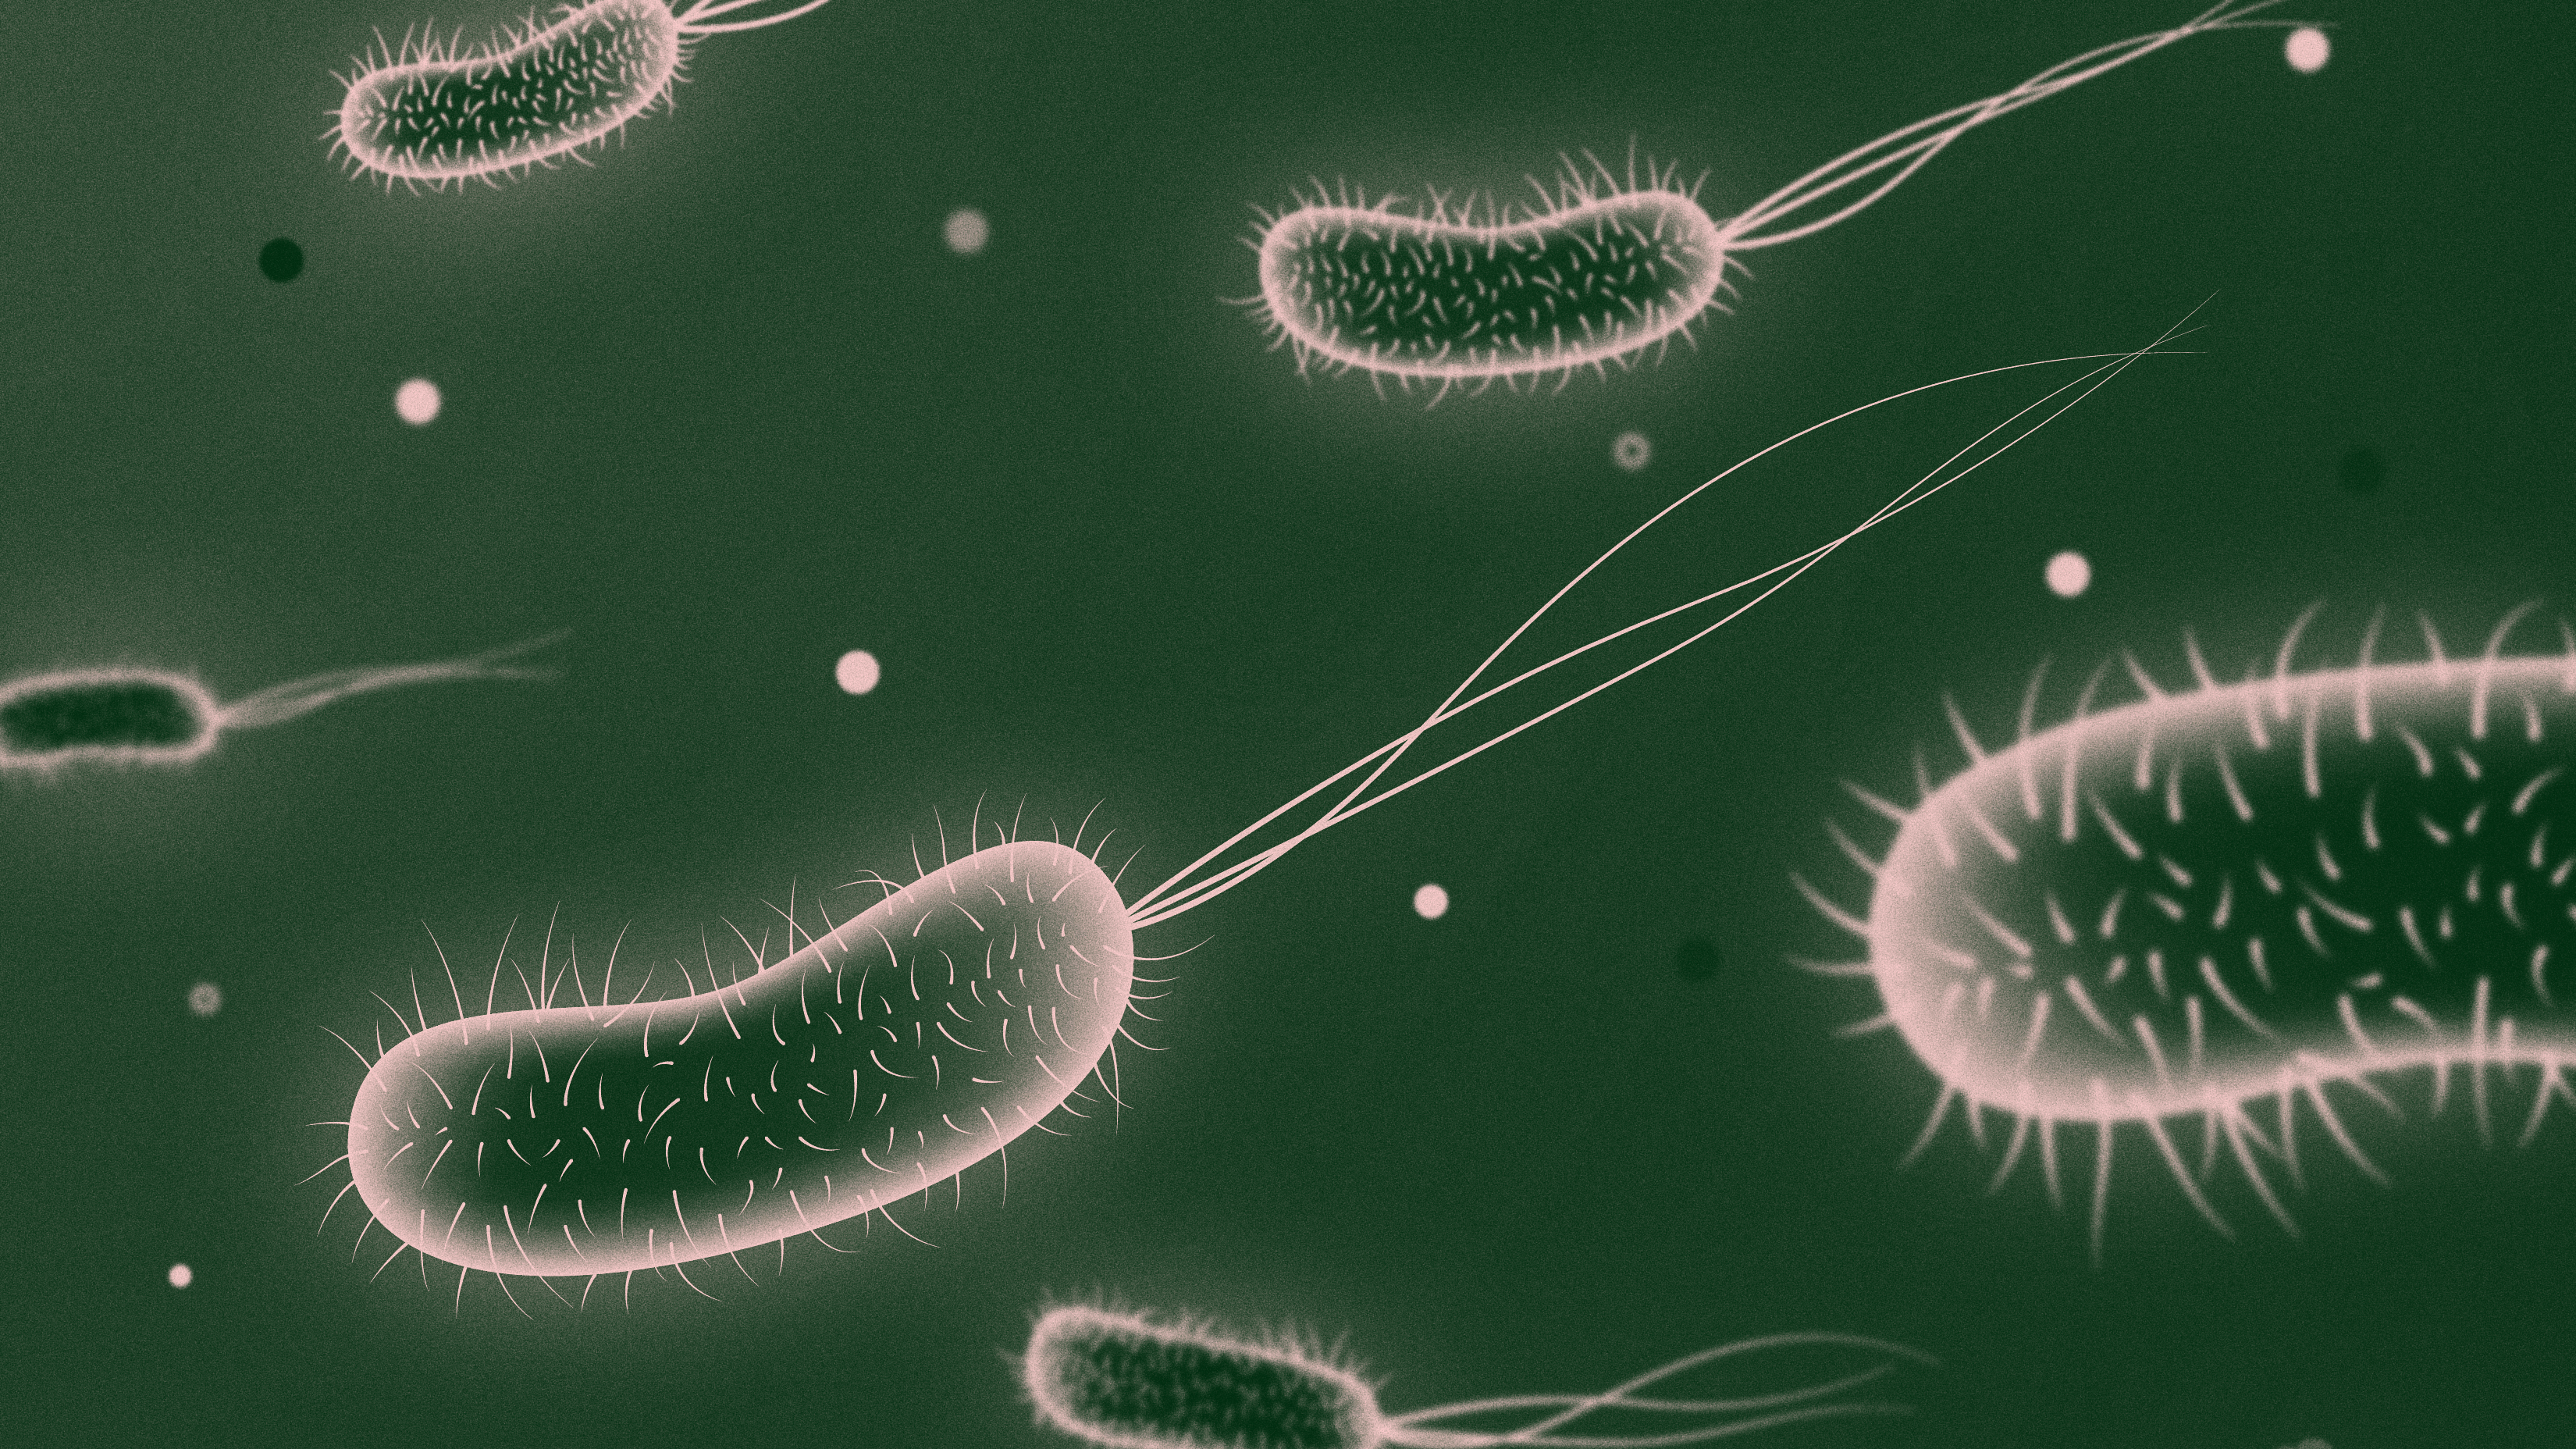 E. coli illustration